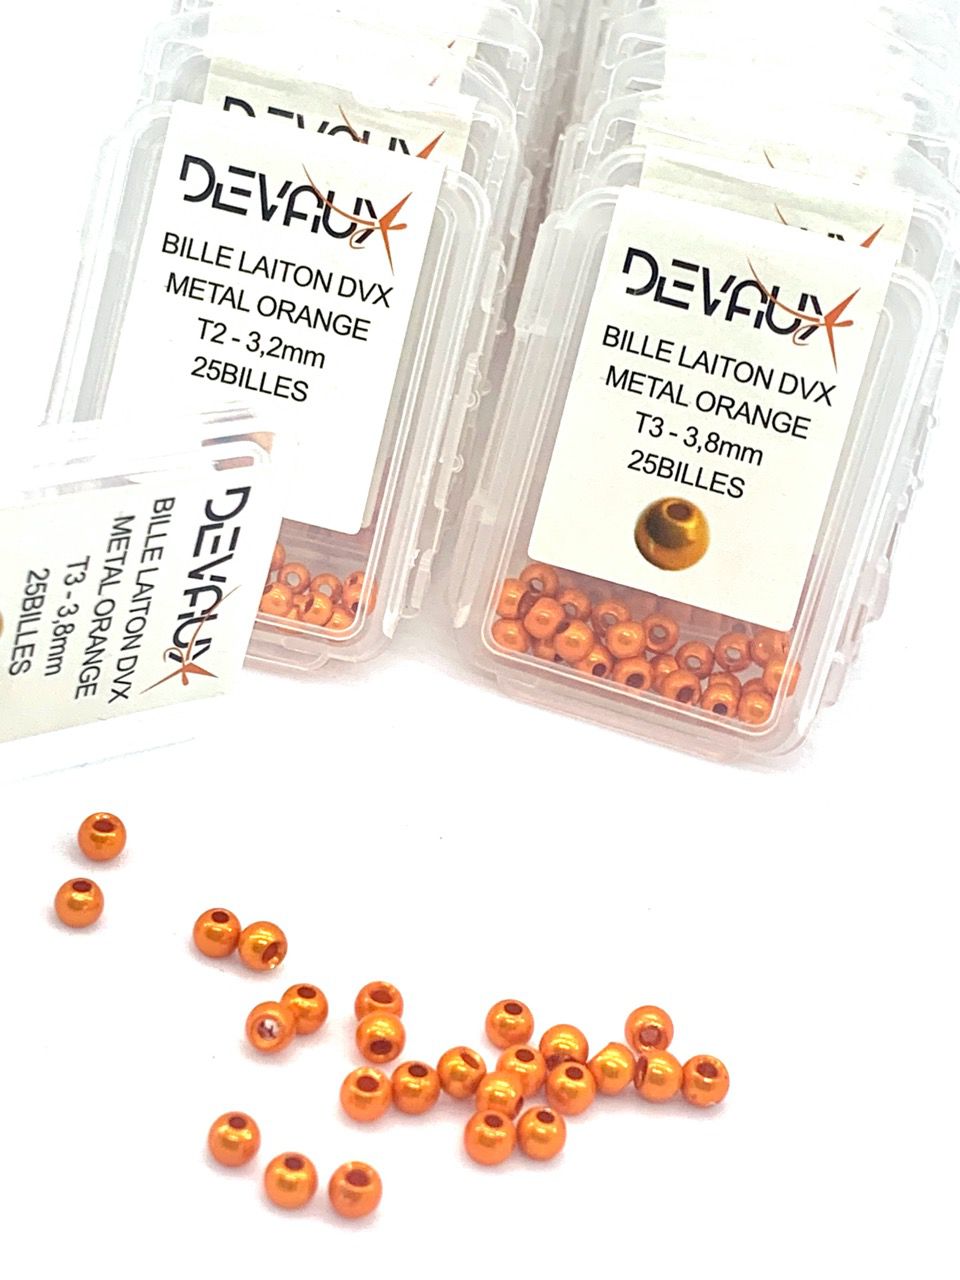 Billes laiton DVX  métal orange